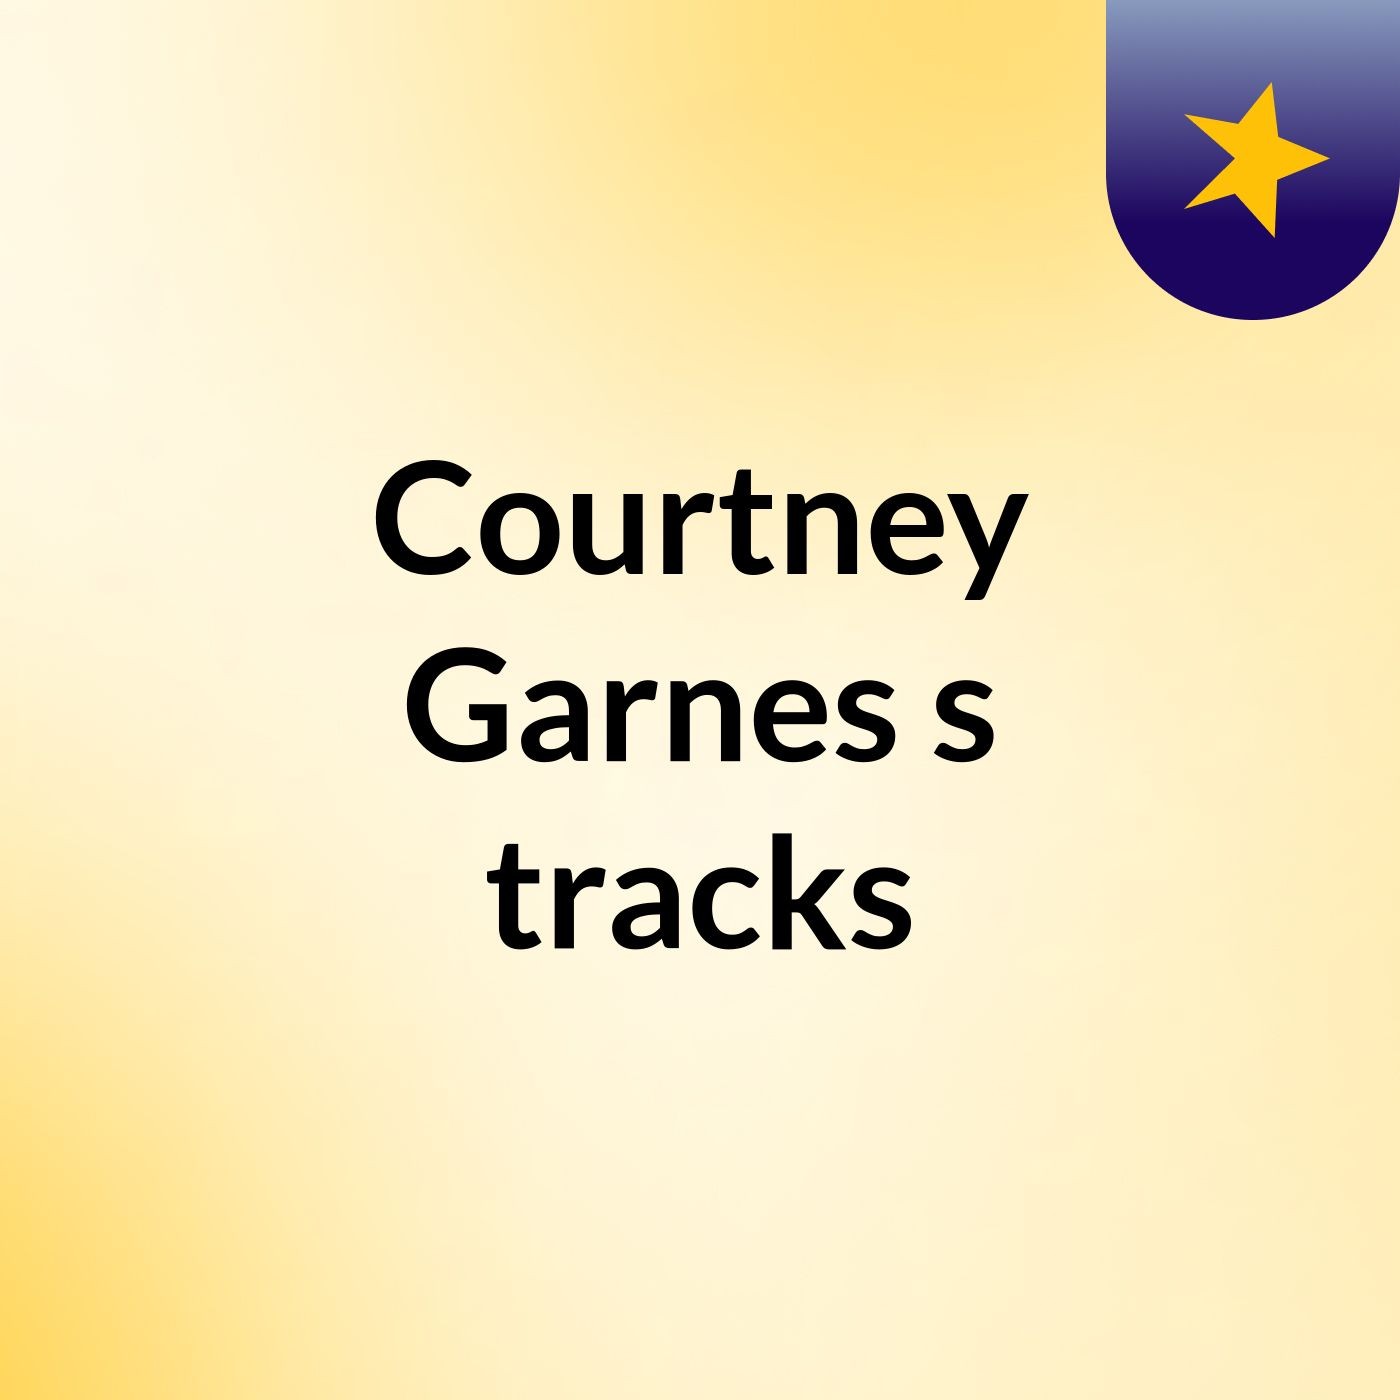 Courtney Garnes's tracks